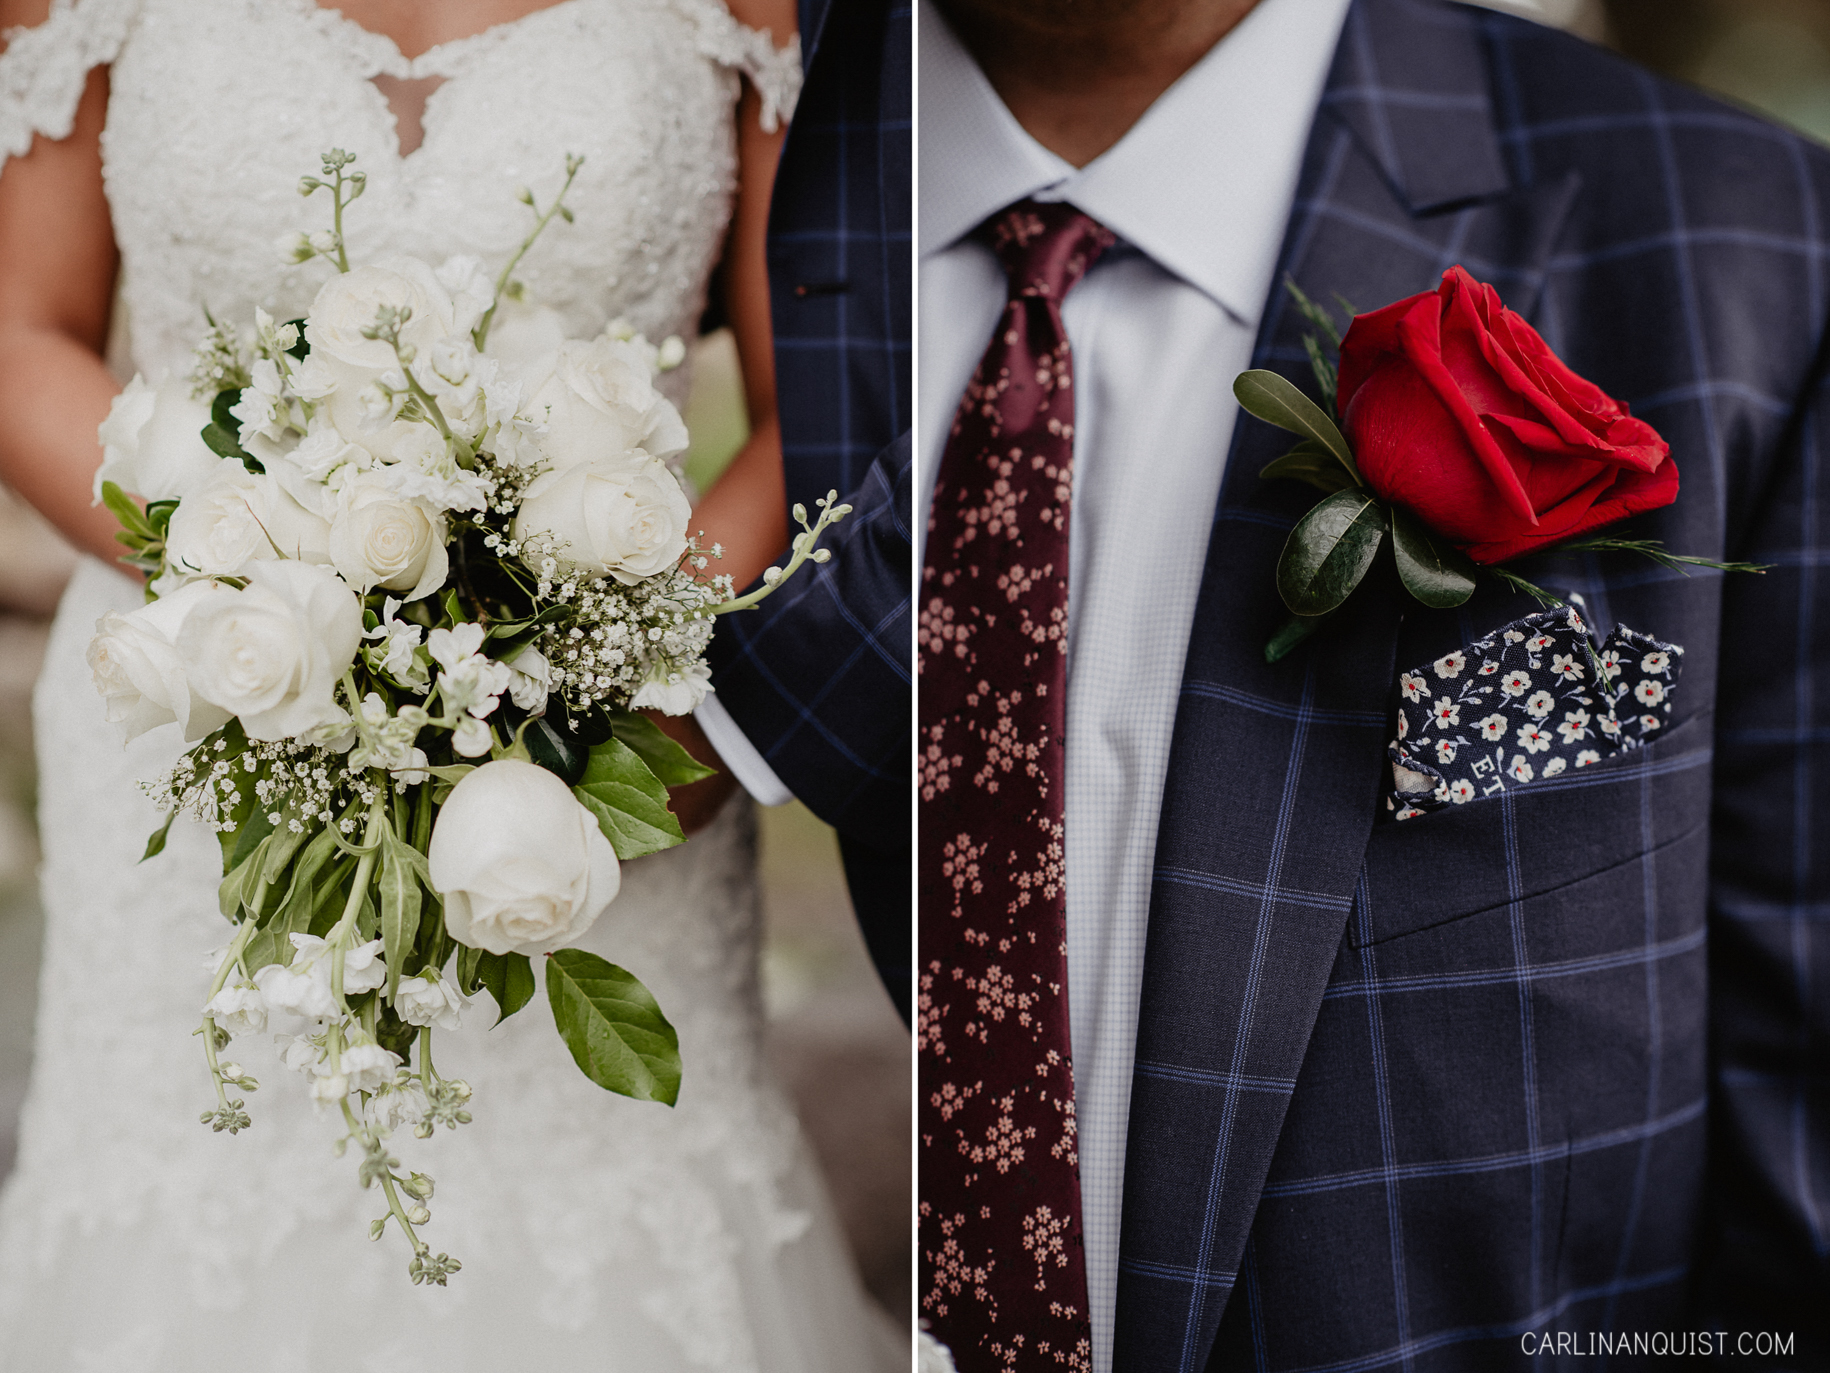 Wedding Details - Bride & Groom Portraits - Catholic/Sikh Wedding Photographer Calgary